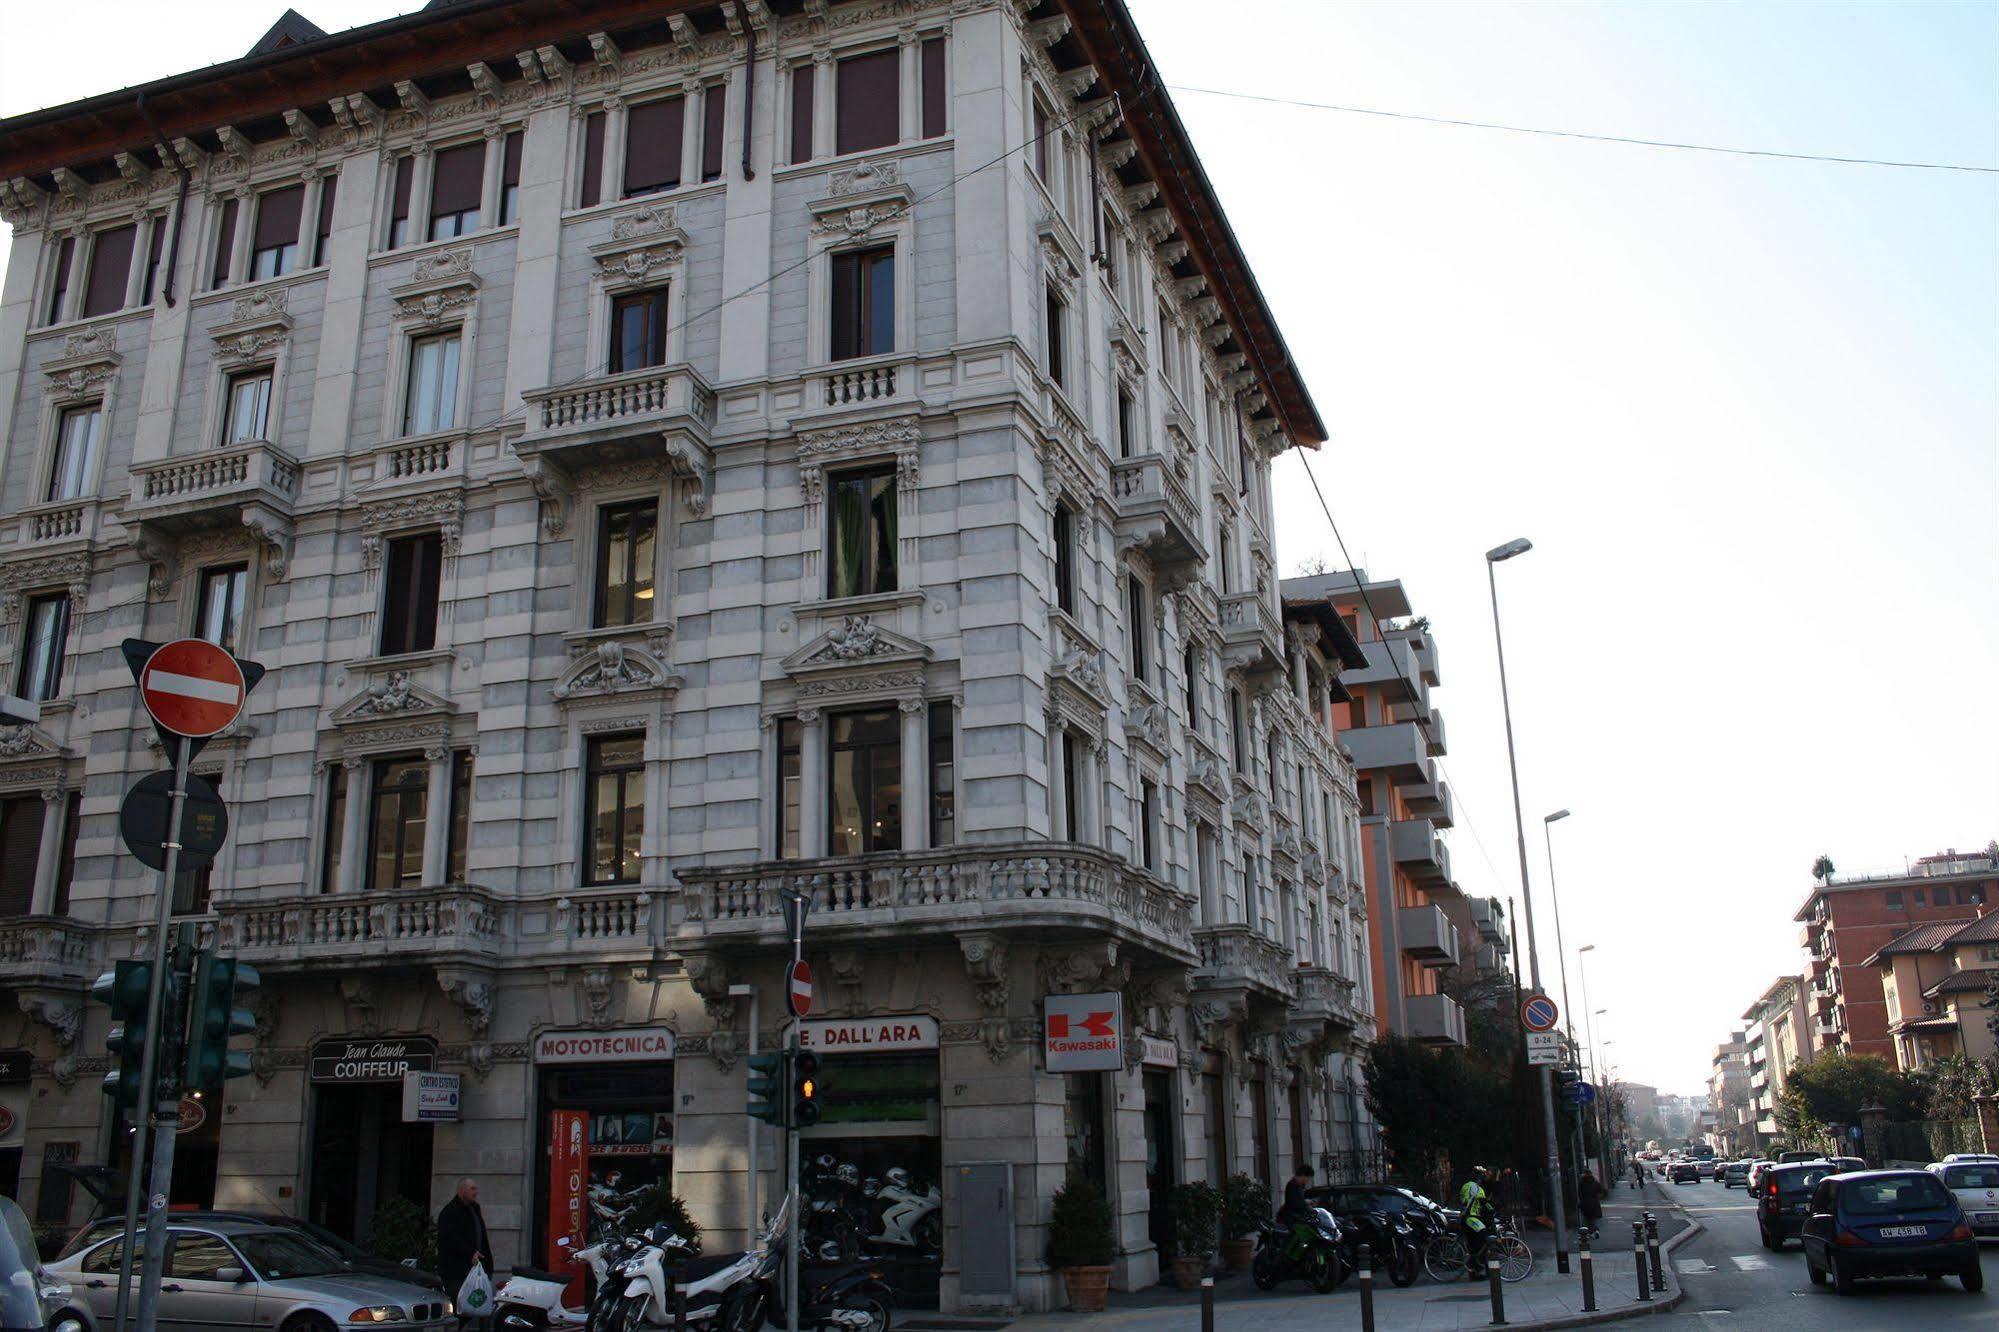 Bergamo Romantica Exterior foto